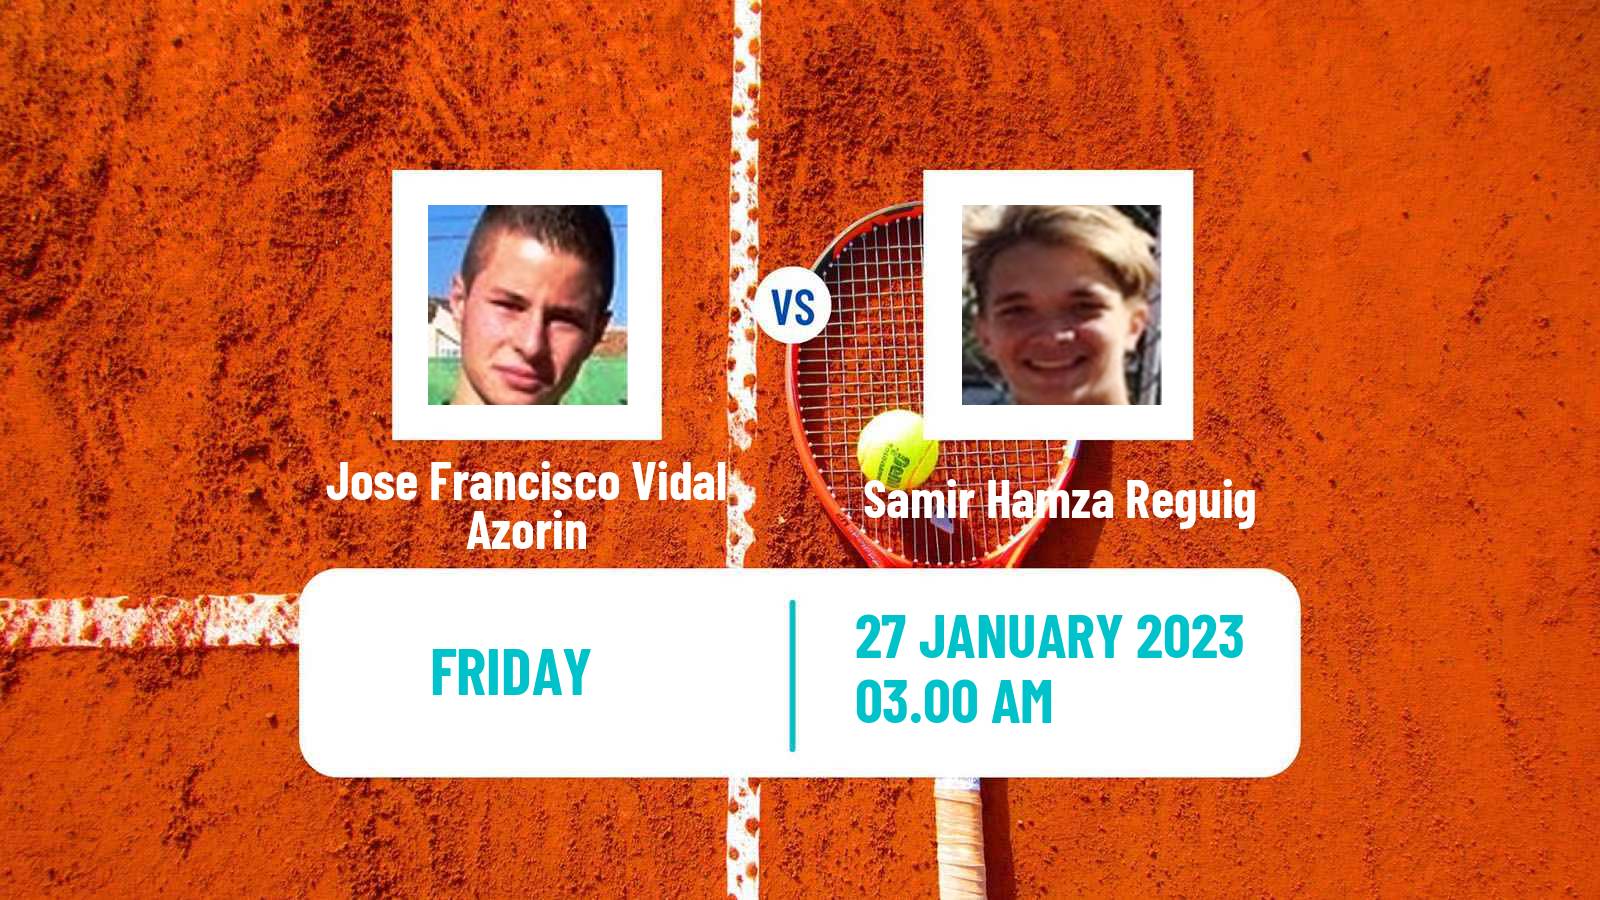 Tennis ITF Tournaments Jose Francisco Vidal Azorin - Samir Hamza Reguig